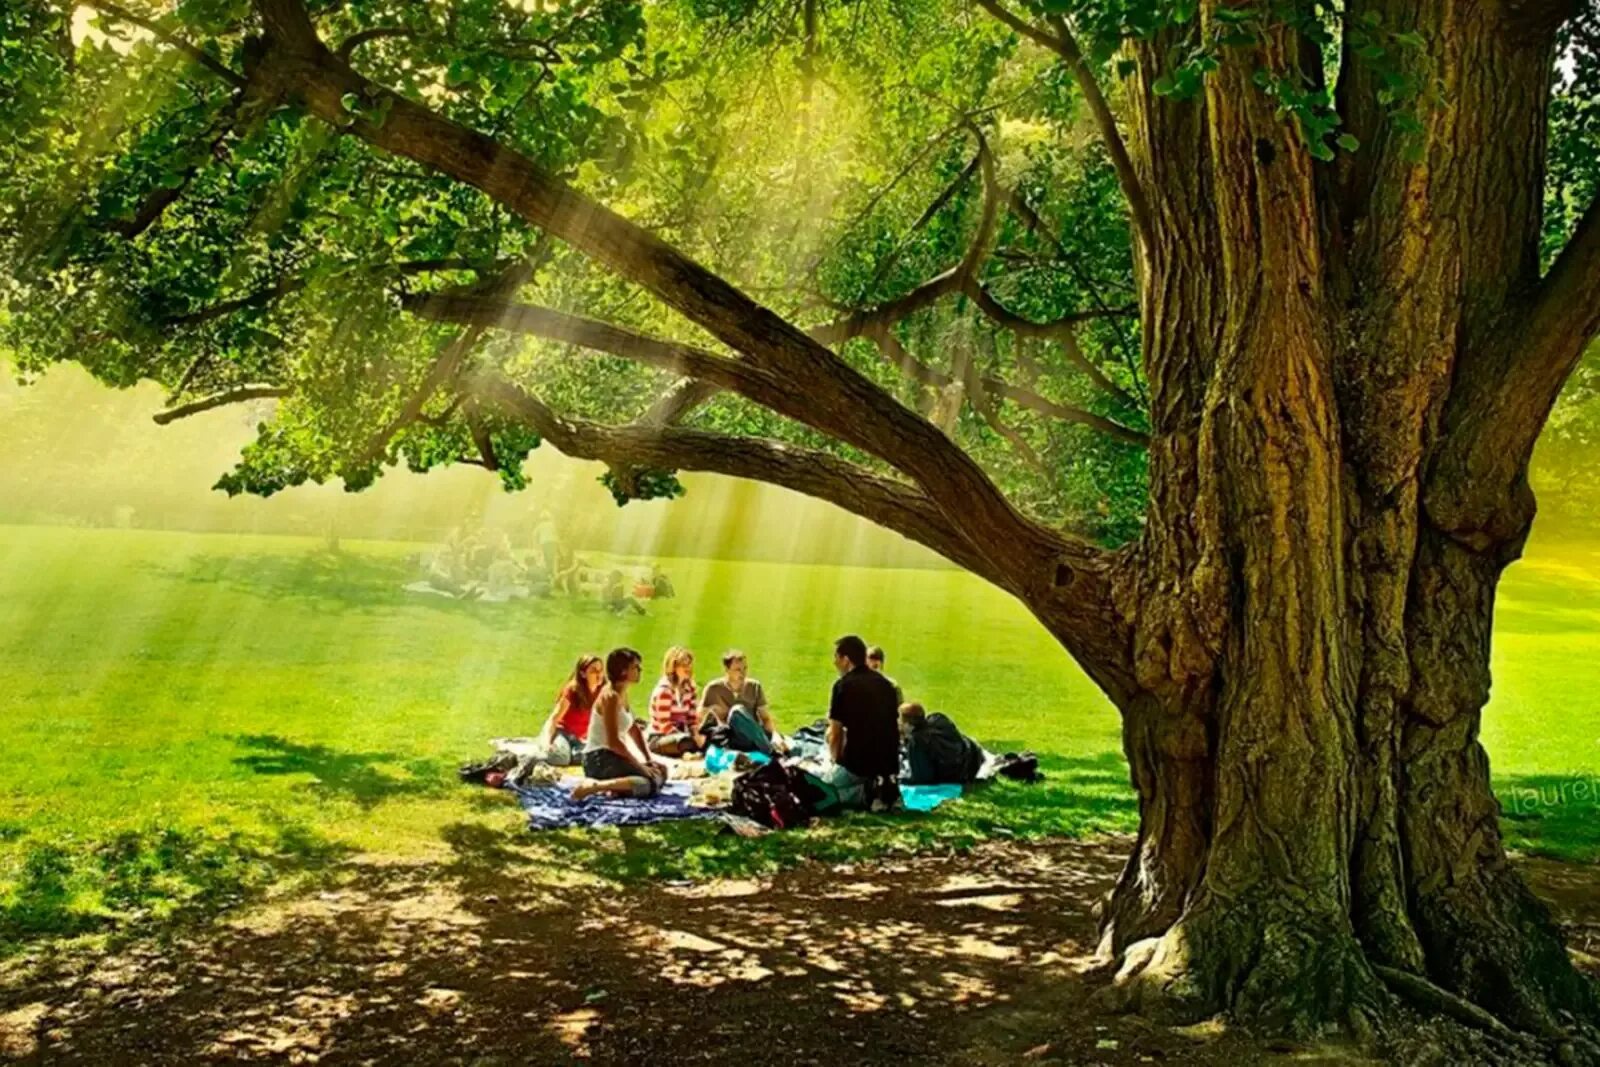 Природа с точки зрения толстого. Пикник в лесу. Люди отдыхают на природе. Пикник под деревом. Человек и природа.